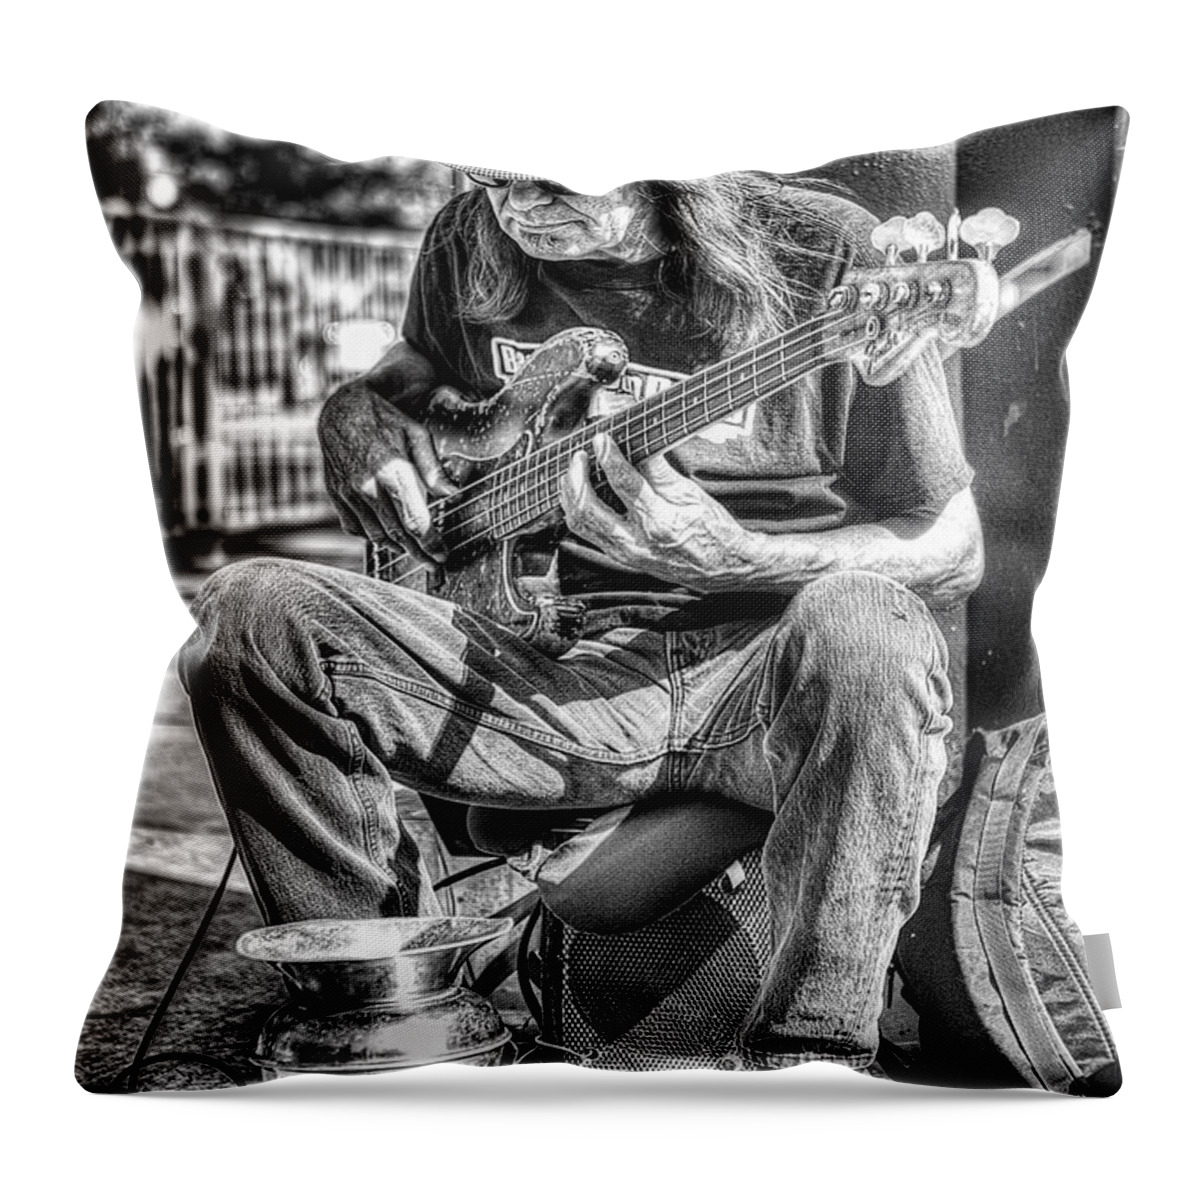 Guitar Throw Pillow featuring the photograph Guitar Man by Deborah Penland